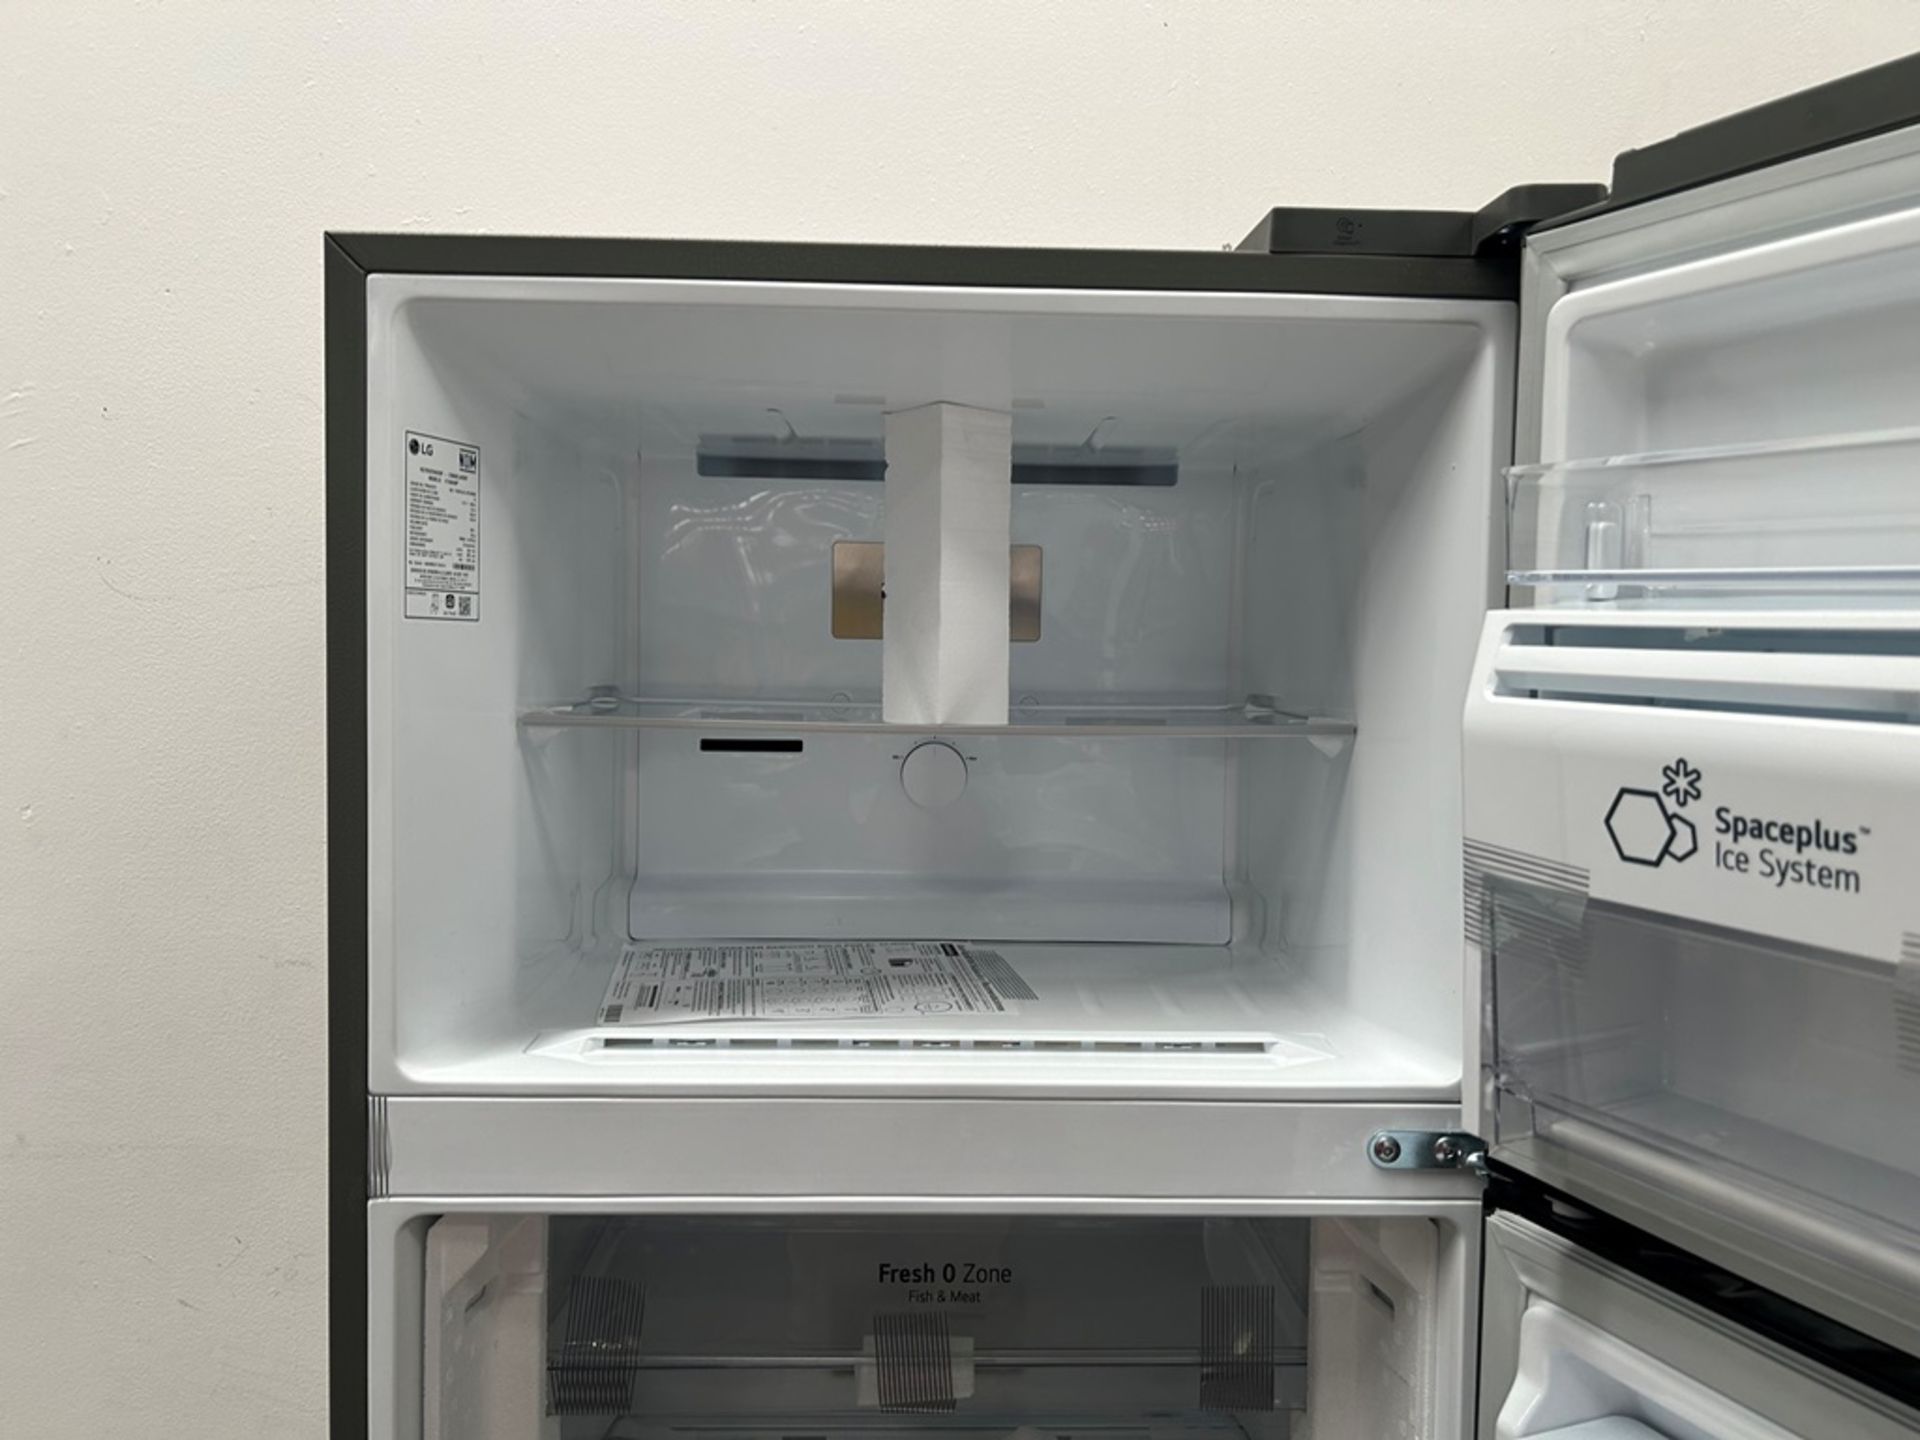 (NUEVO) Refrigerador con dispensador de agua Marca LG, Modelo VT40AWP, Serie 1S414, Color GRIS - Image 5 of 11